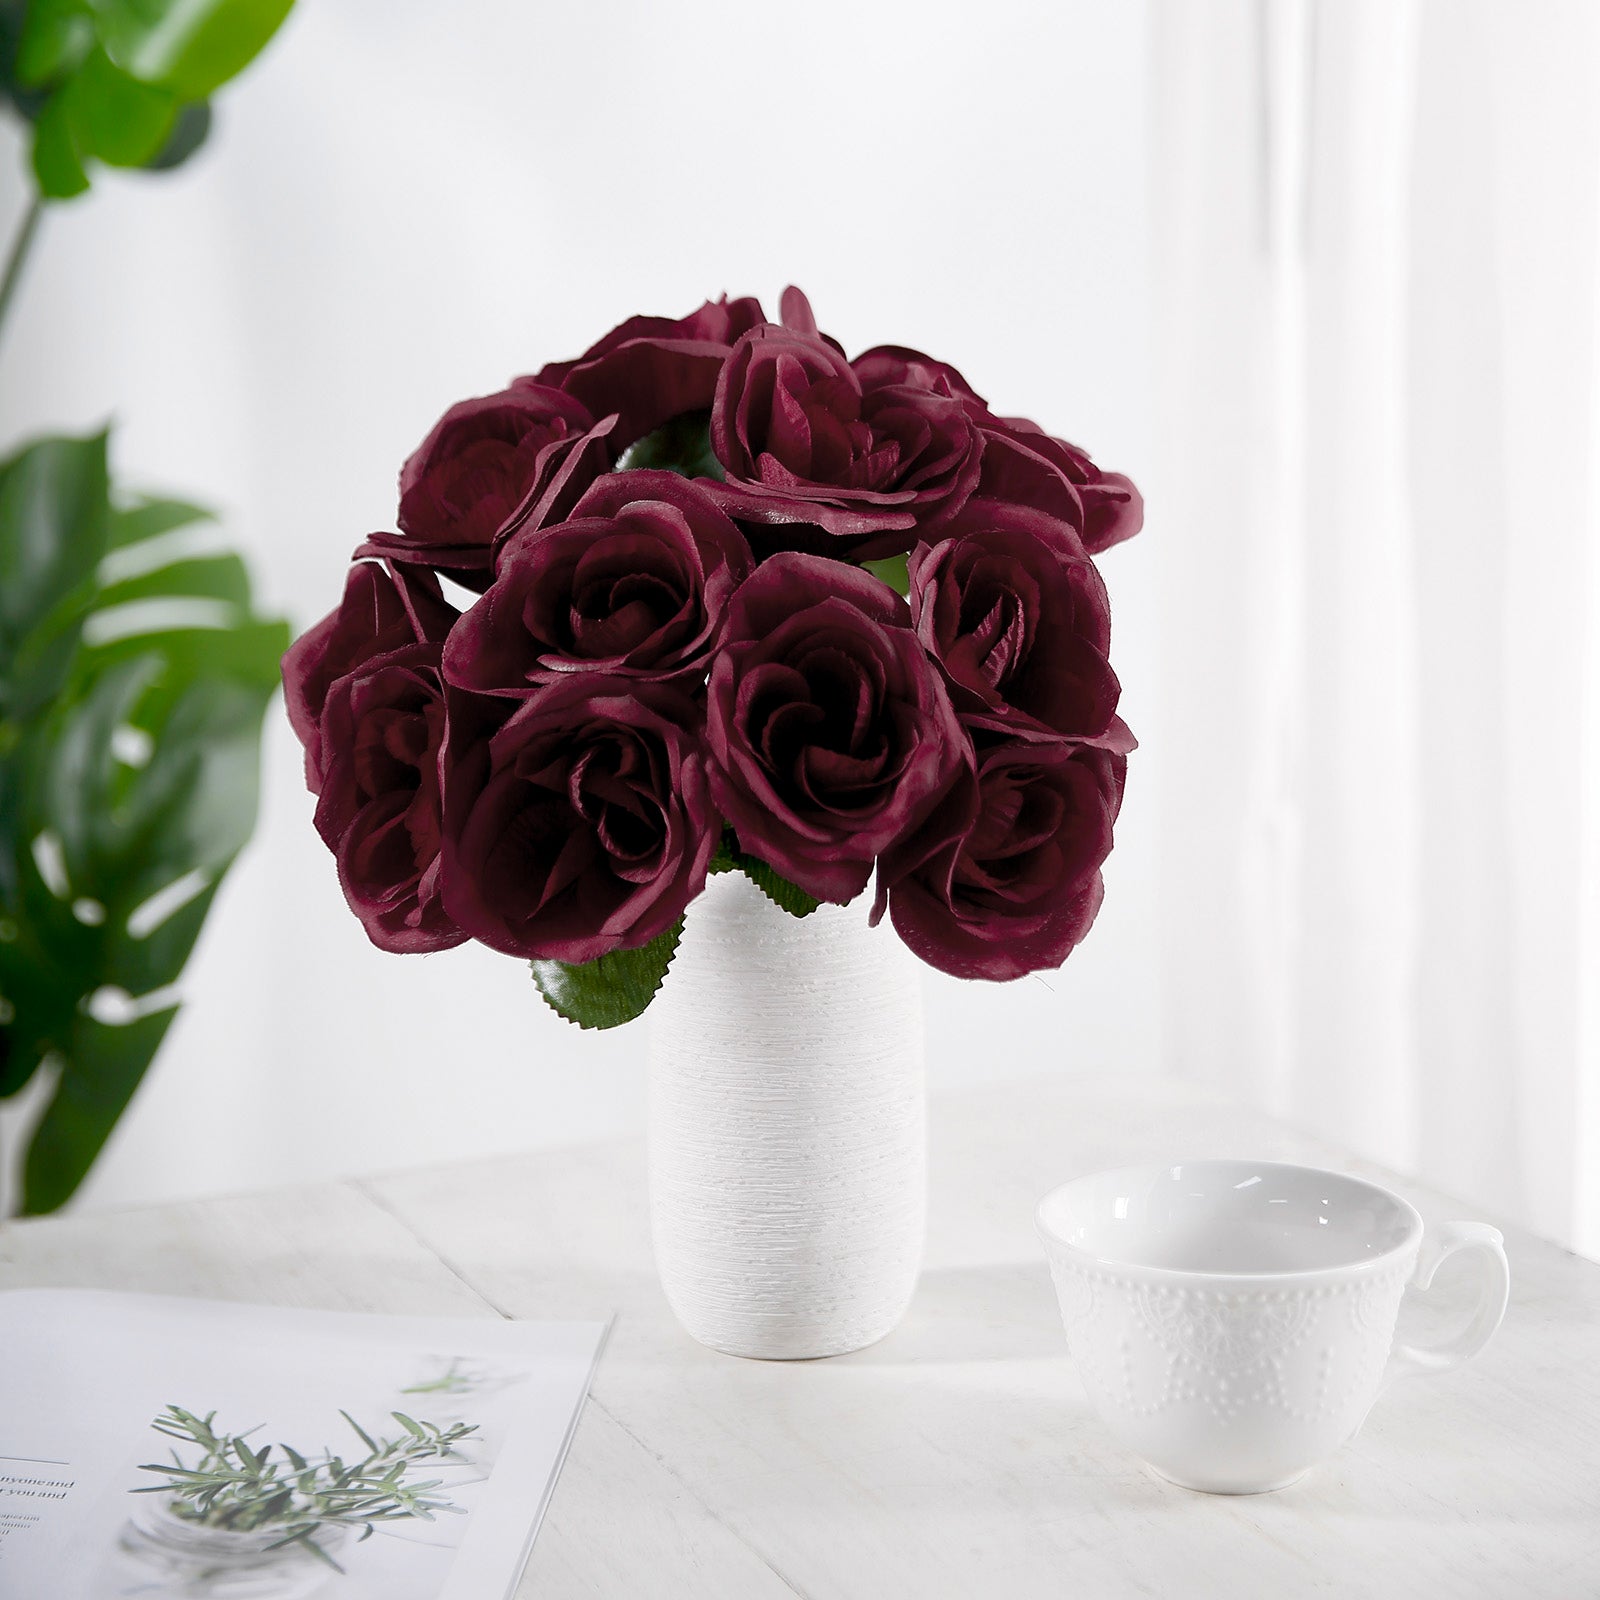 12 Burgundy Velvet-Like Rose Bouquet | eFavormart.com